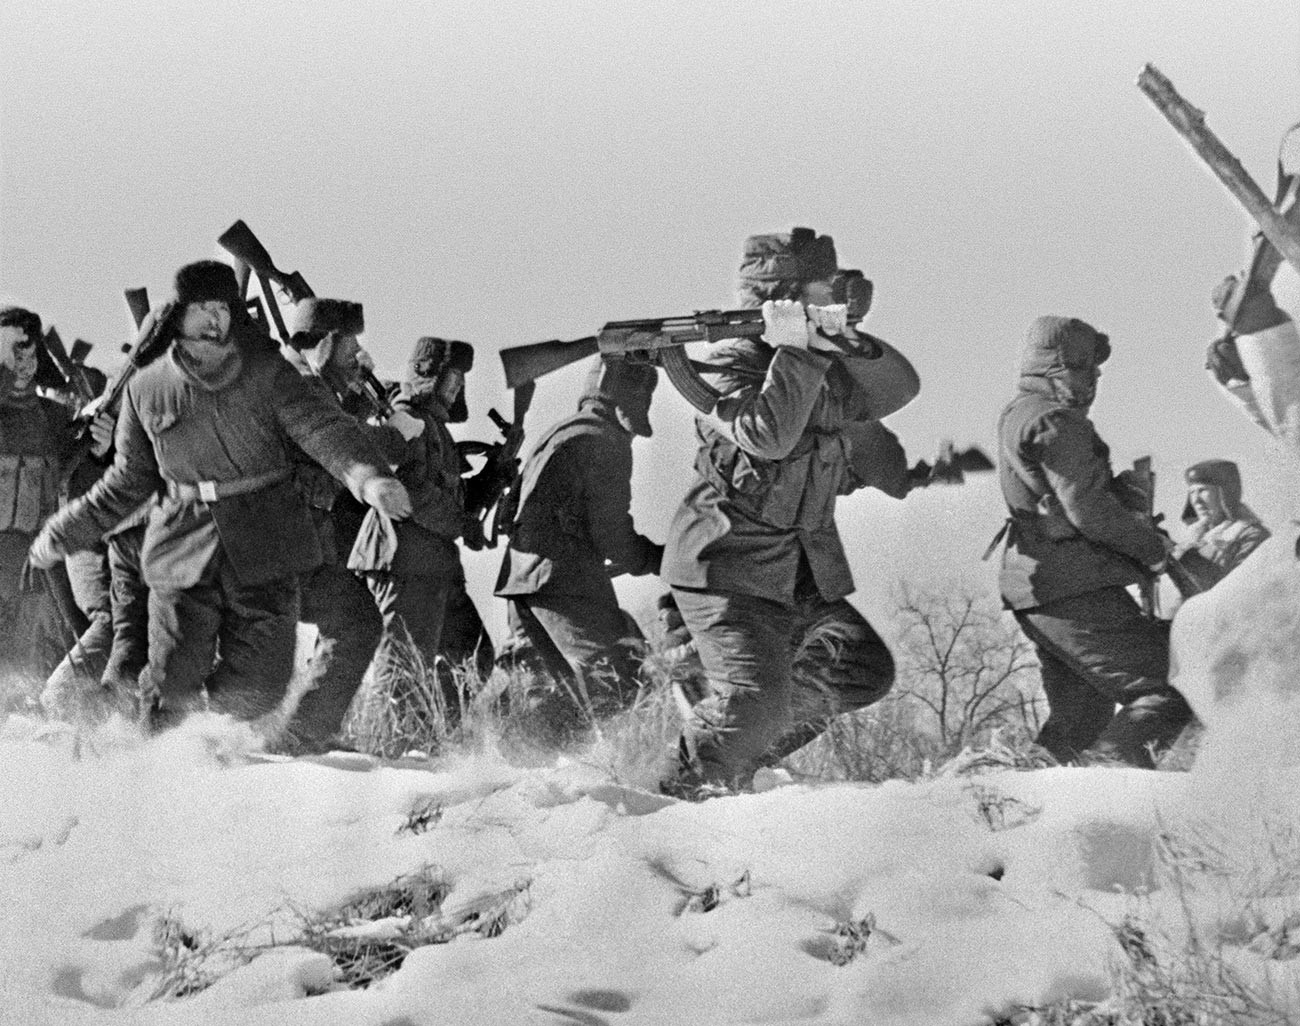 Soldati cinesi cercano di raggiungere l'isola Damanskij, conosciuta in Cina come “Zhēnbao Dao”, “Isola Preziosa”